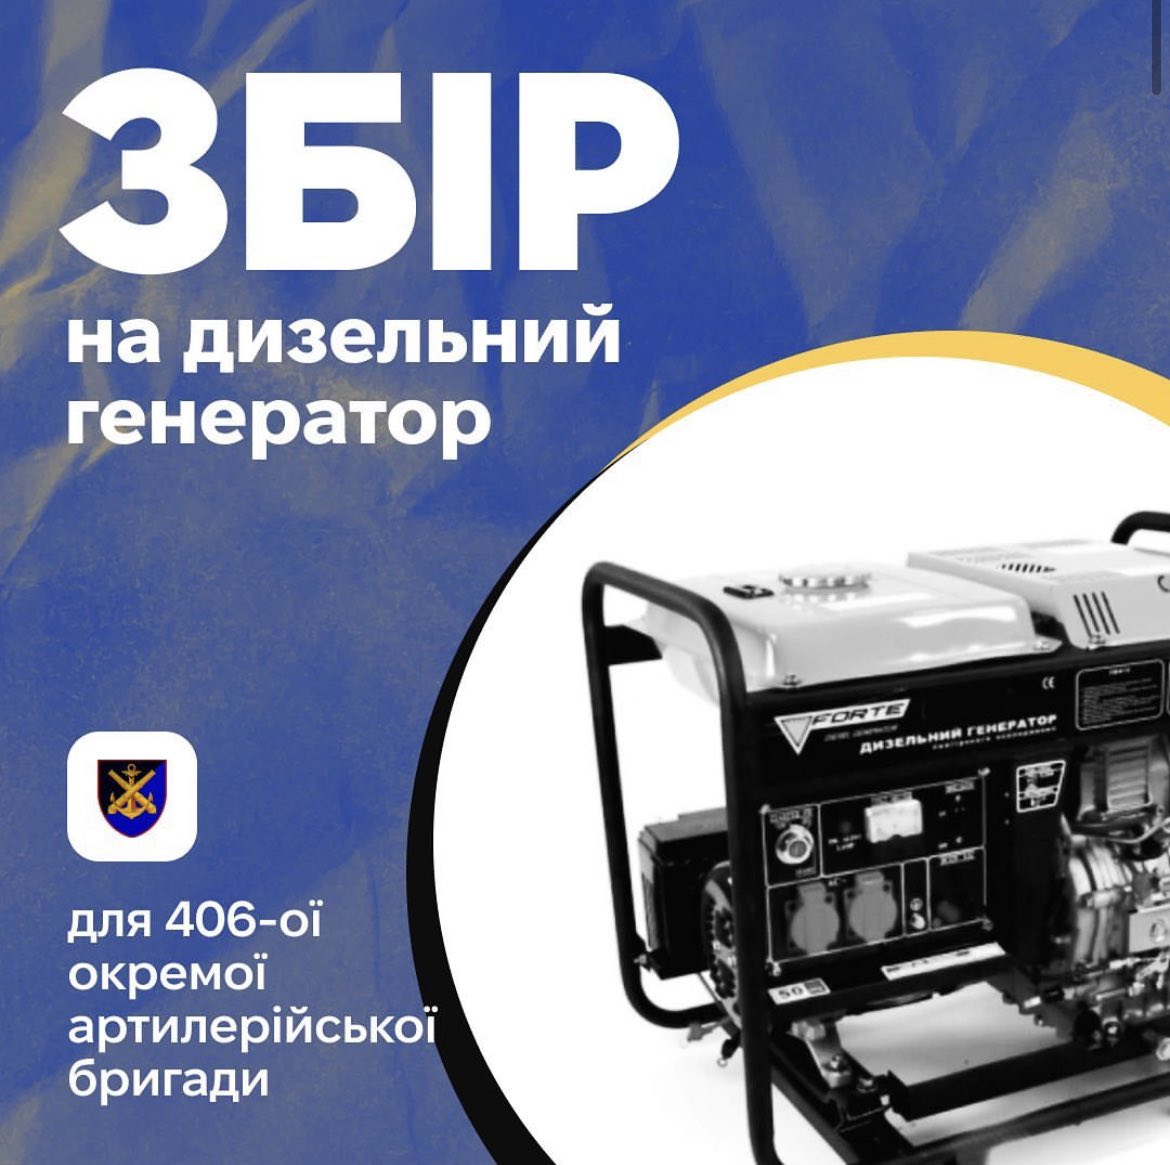 неділя — день добрих справ. допоможіть, буль ласка, дозбирати грошей на генератор. генератор вже стоїть чекає, коли його куплять і повезуть до хлопців з 406-ої. send.monobank.ua/jar/3D4Xi8kup2